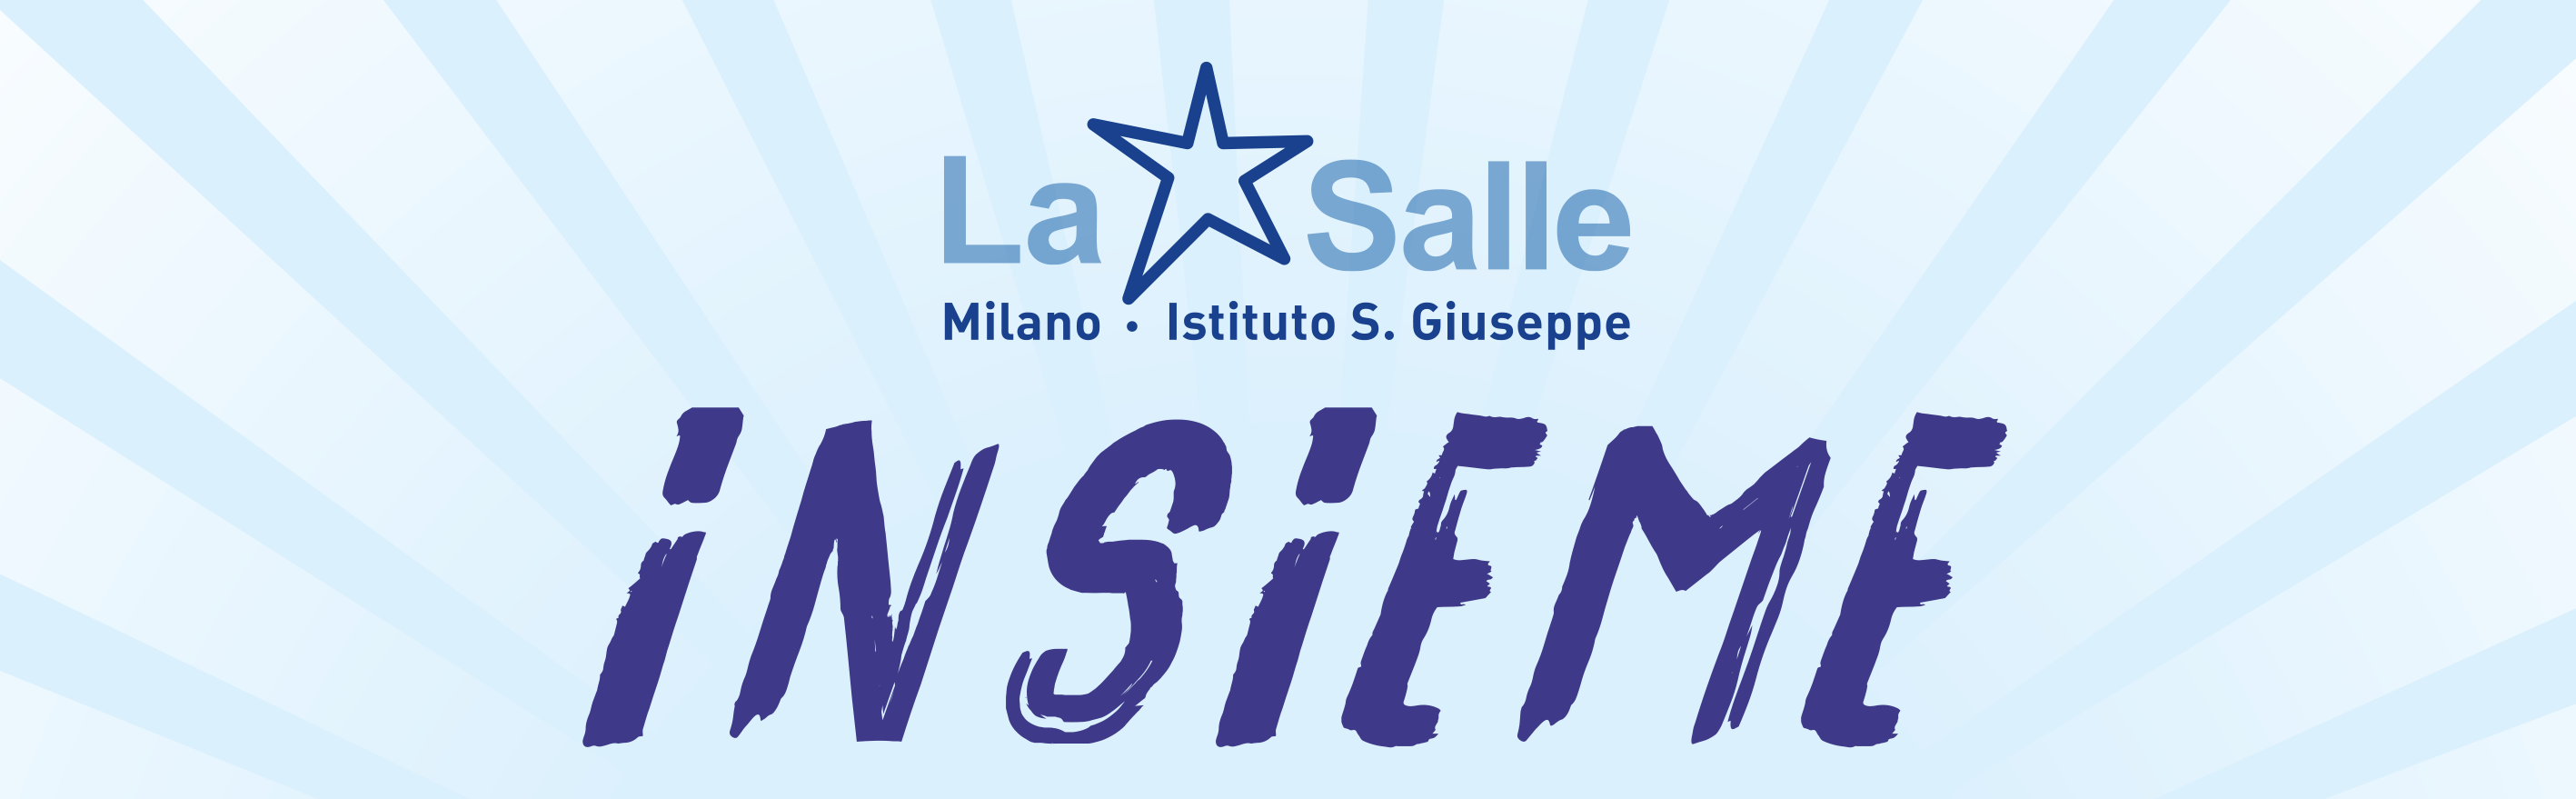 Istituto San Giuseppe La Salle Milano Testata Annuario Insieme